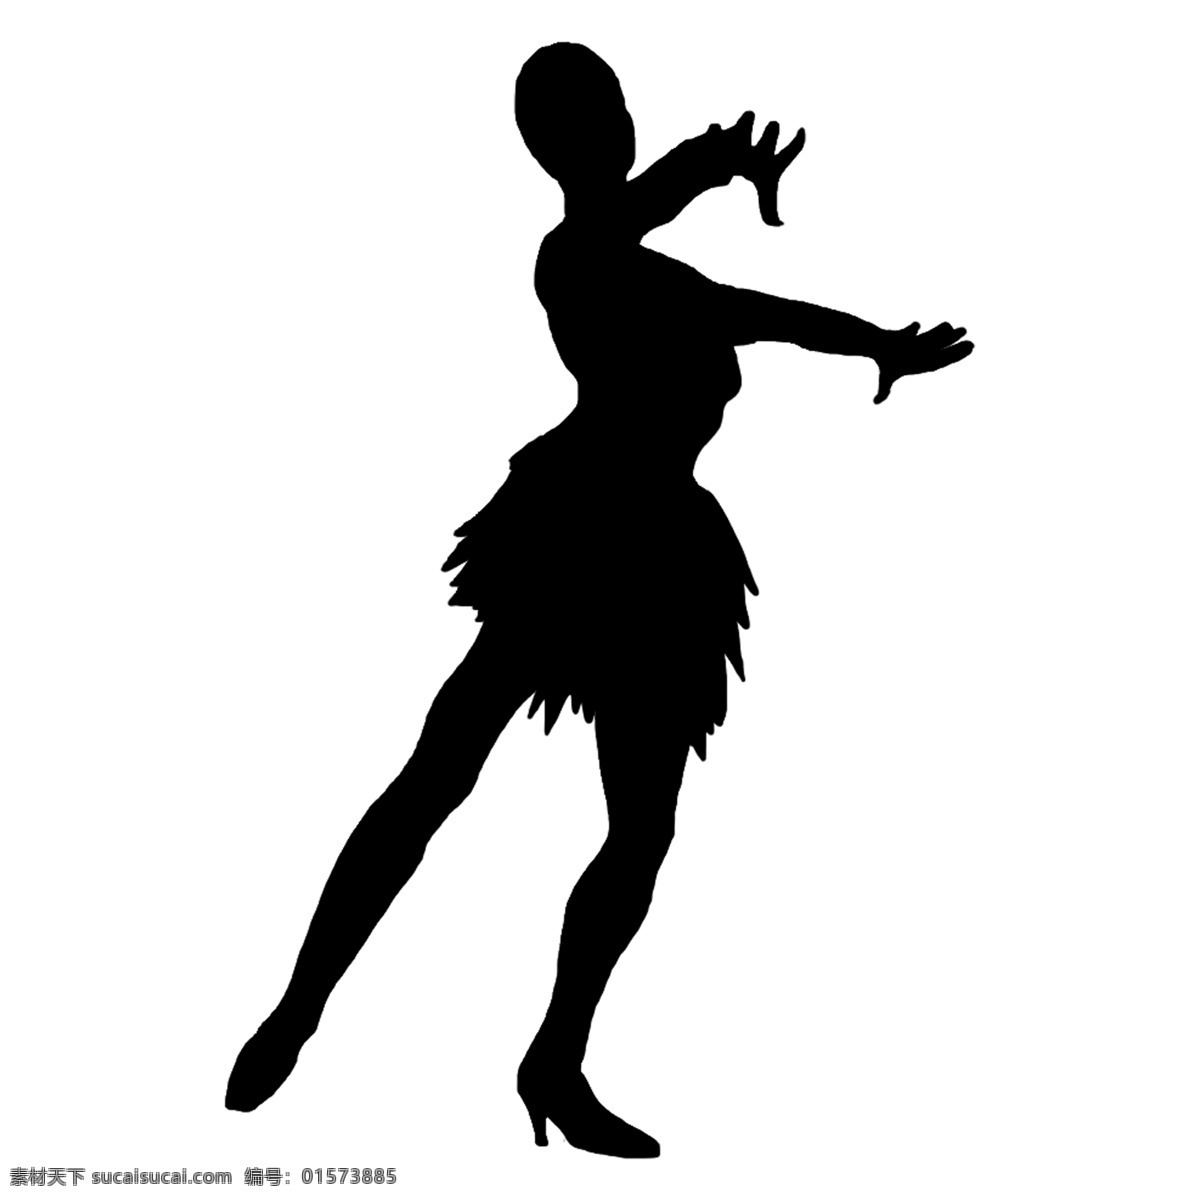 矢量 桑巴 单人舞 羽毛 裙 动作 剪影 羽毛裙 桑巴舞 舞者 服装 美国 拉丁 吸引力 舞蹈 双人舞 衣服 文化 节日 黑色的 传统的 女